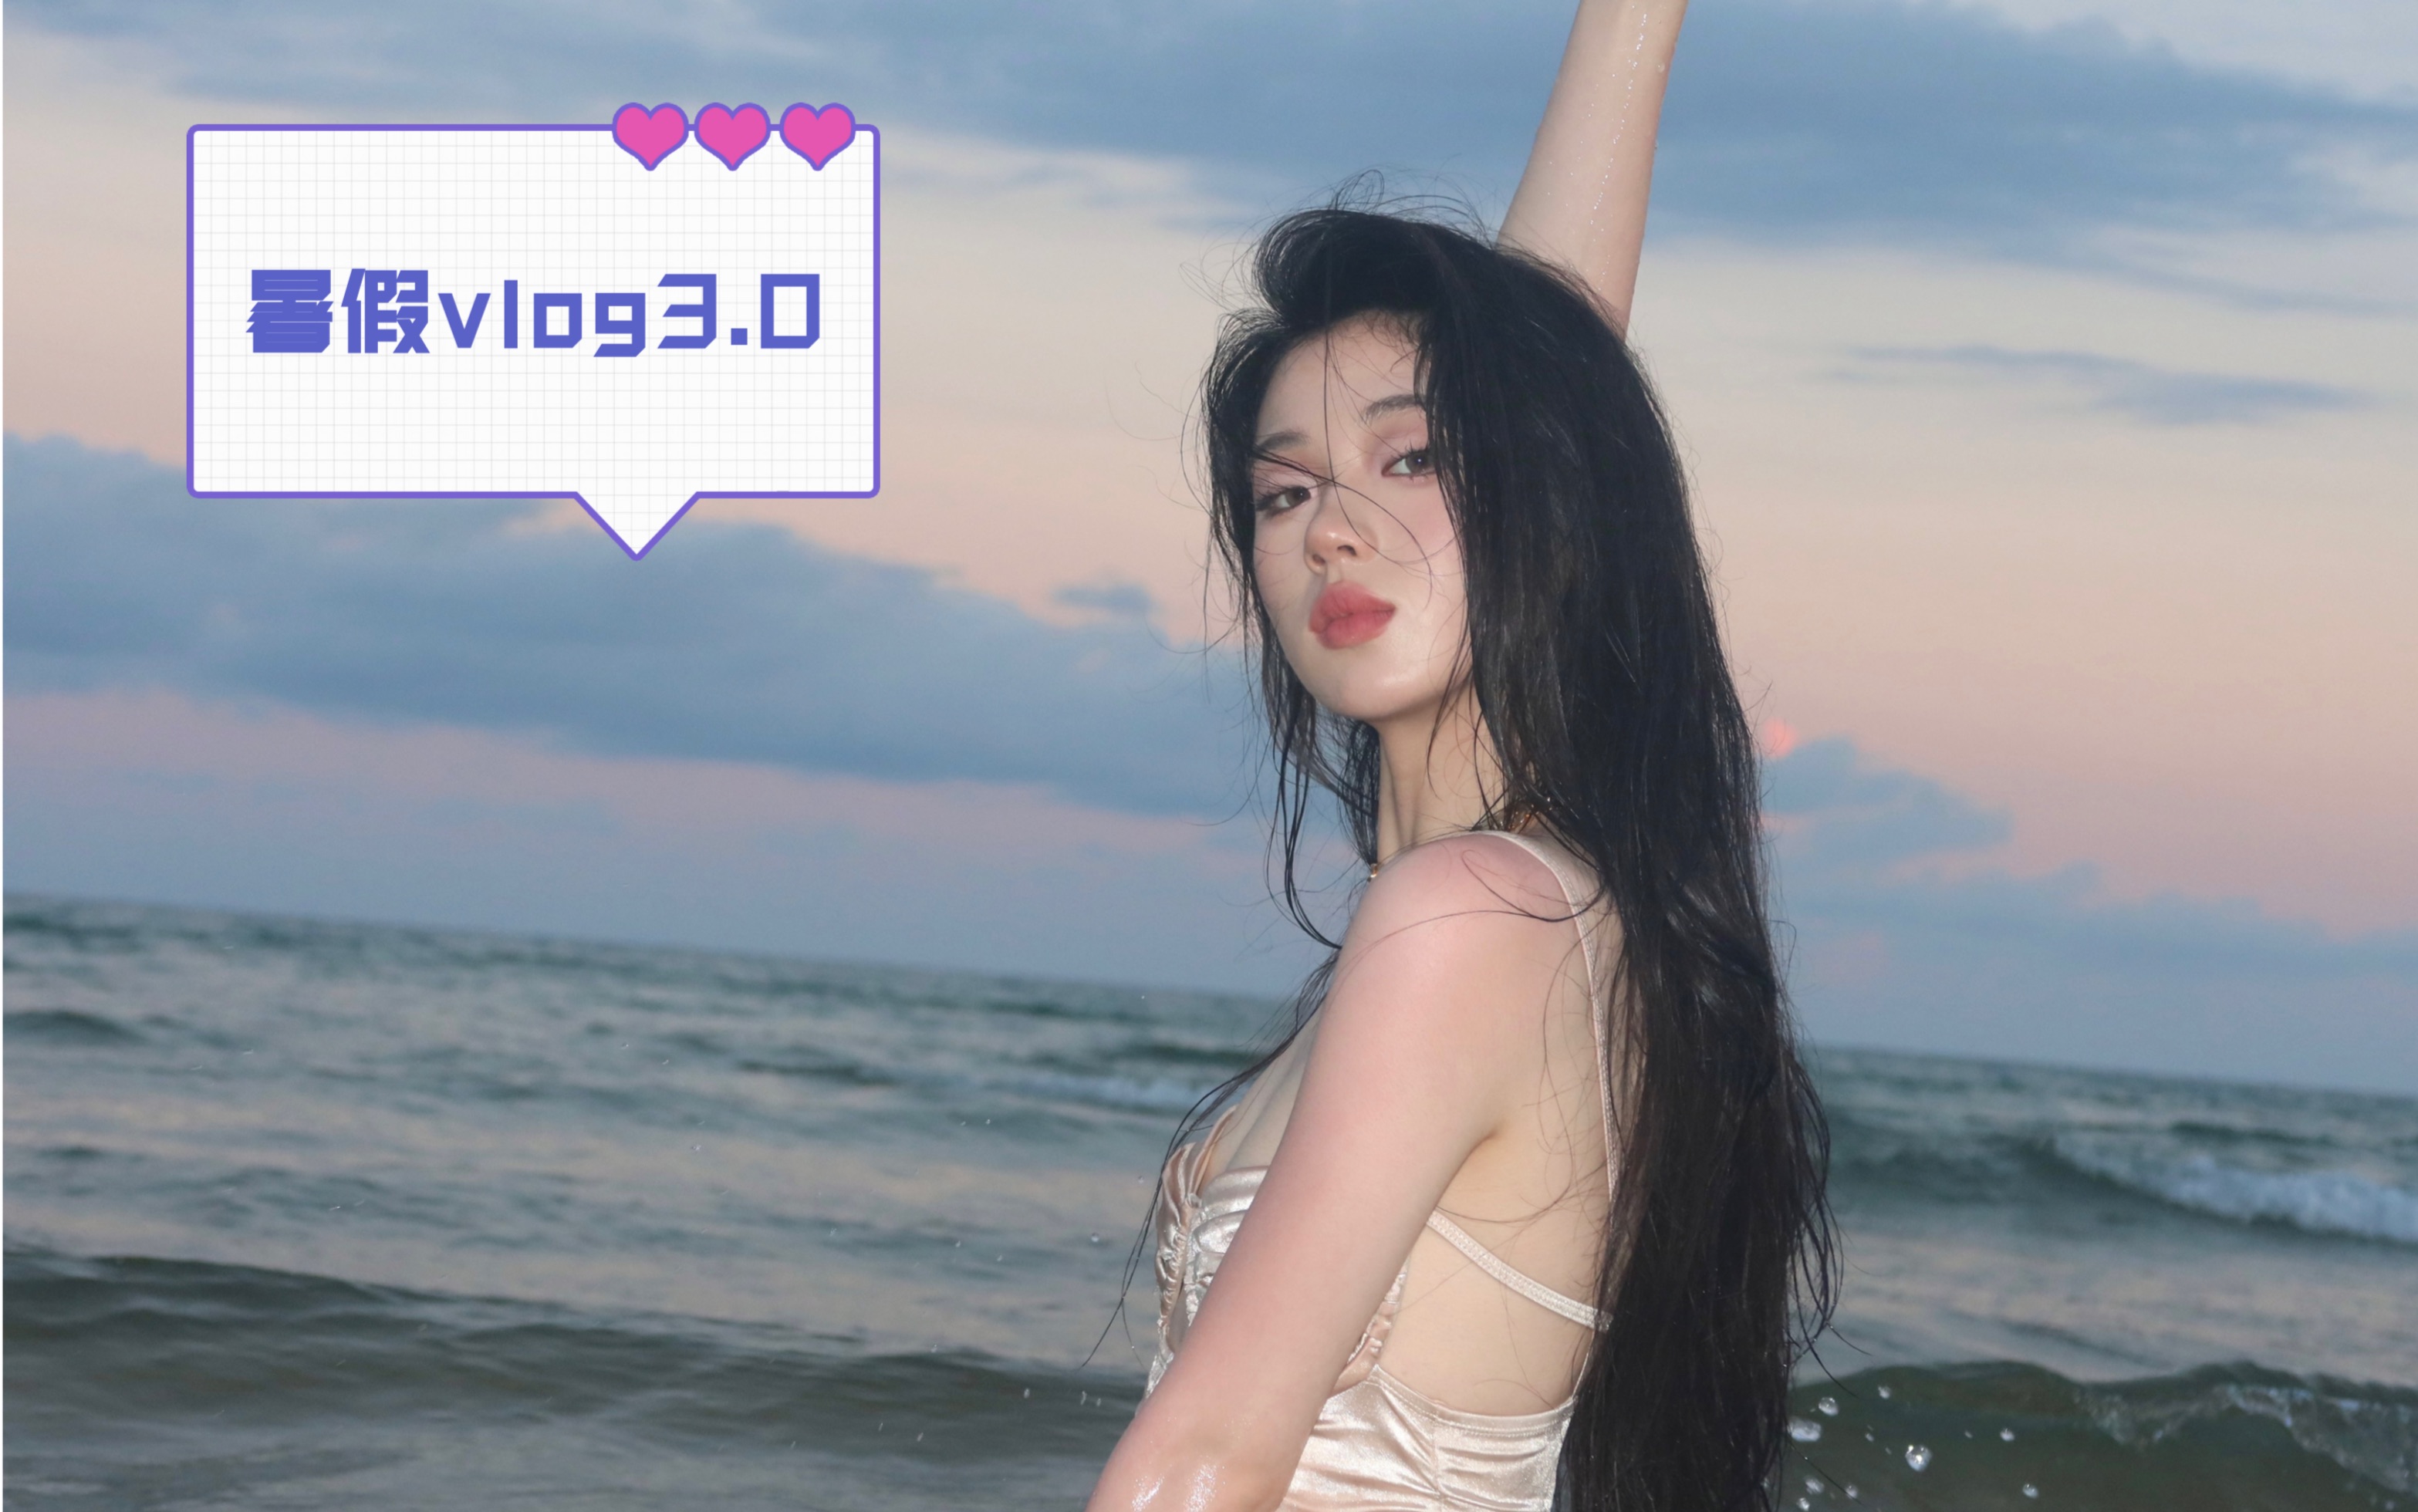 【单依纯】暑假Vlog 3.0 姗姗来迟的海边度假篇